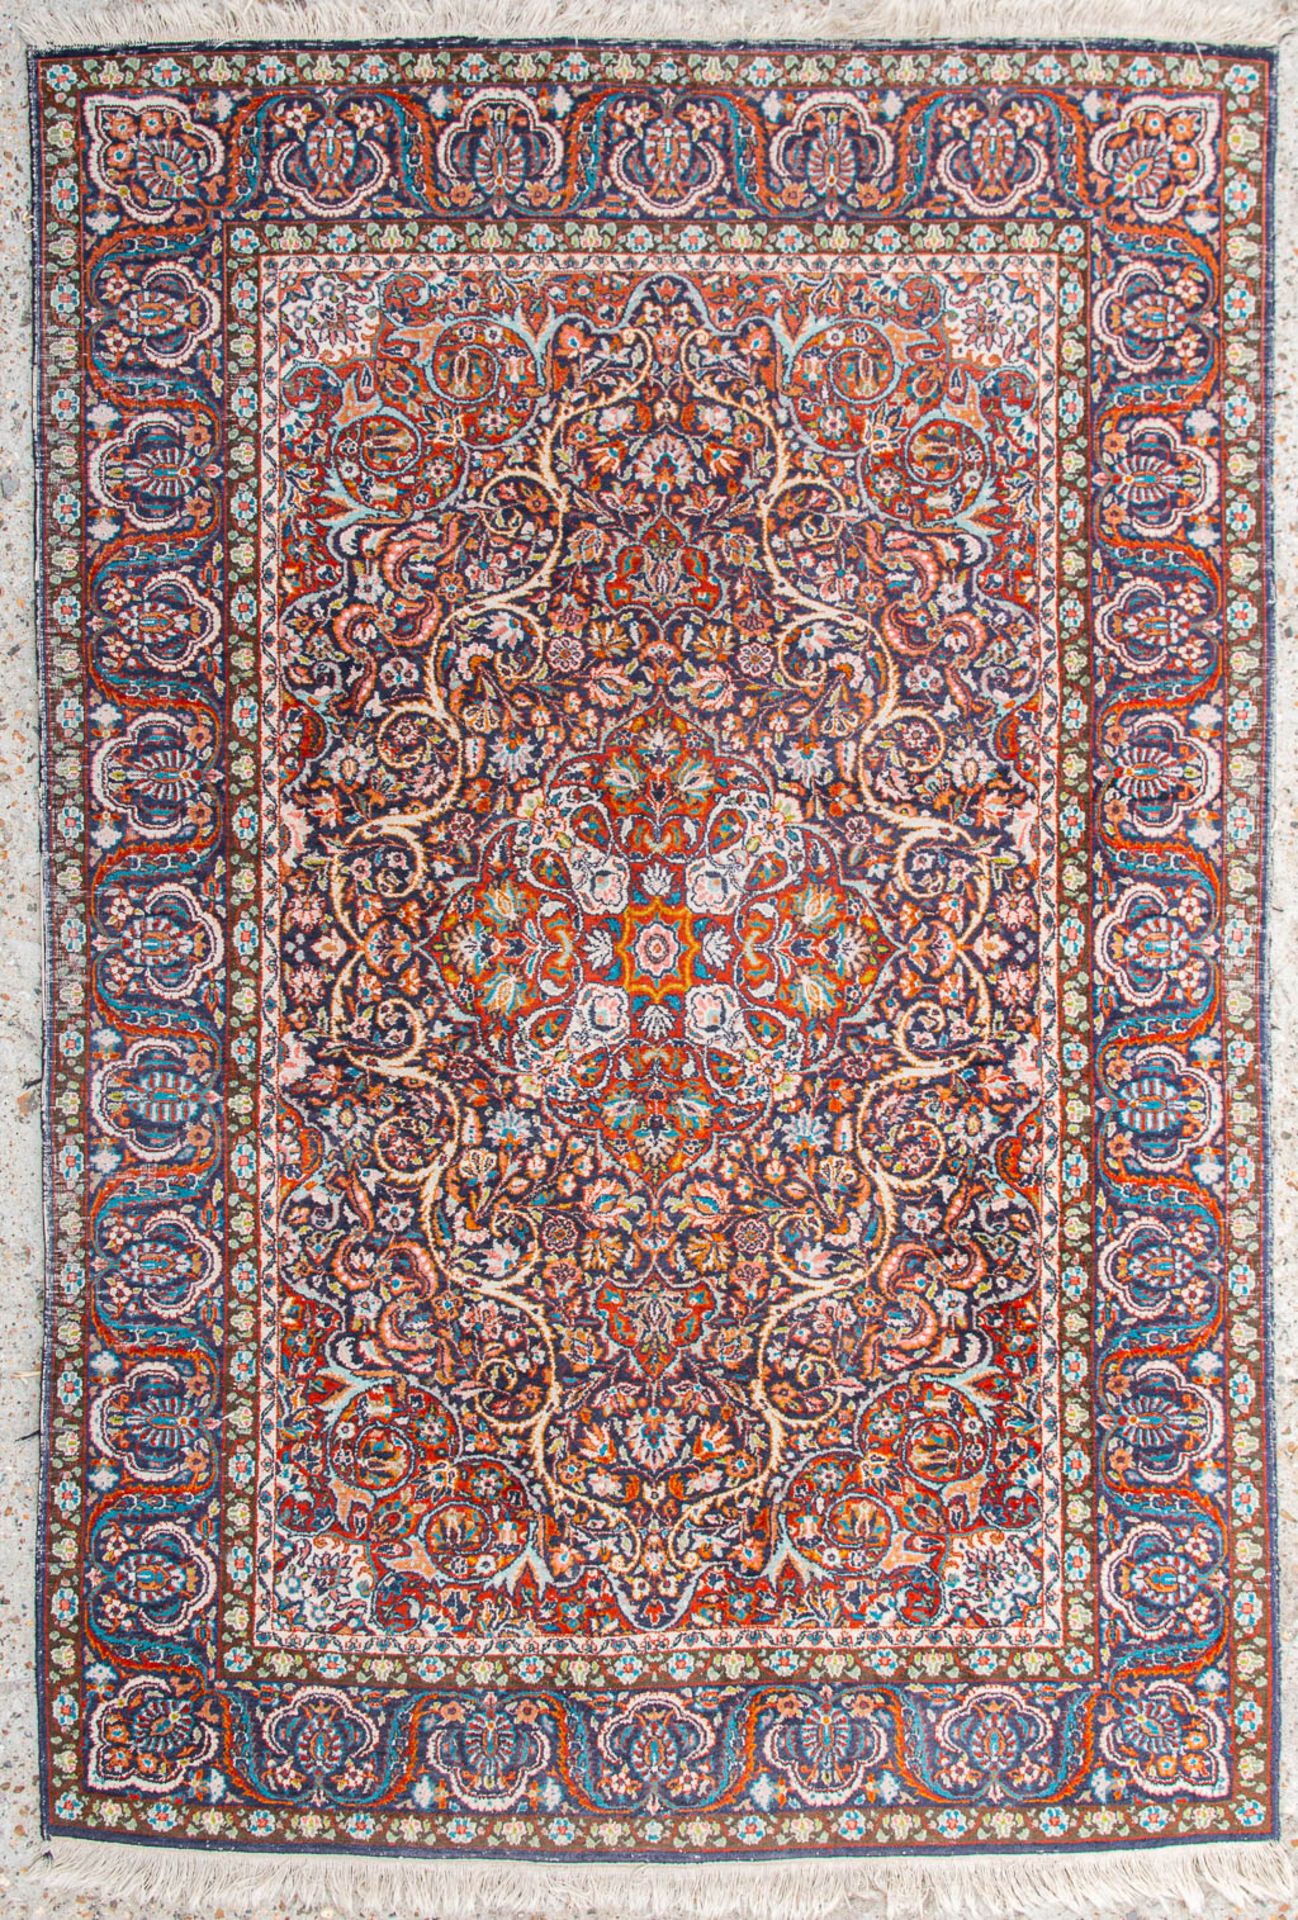 An Oriental hand-made carpet. kerman. (122,5 x 180 cm)